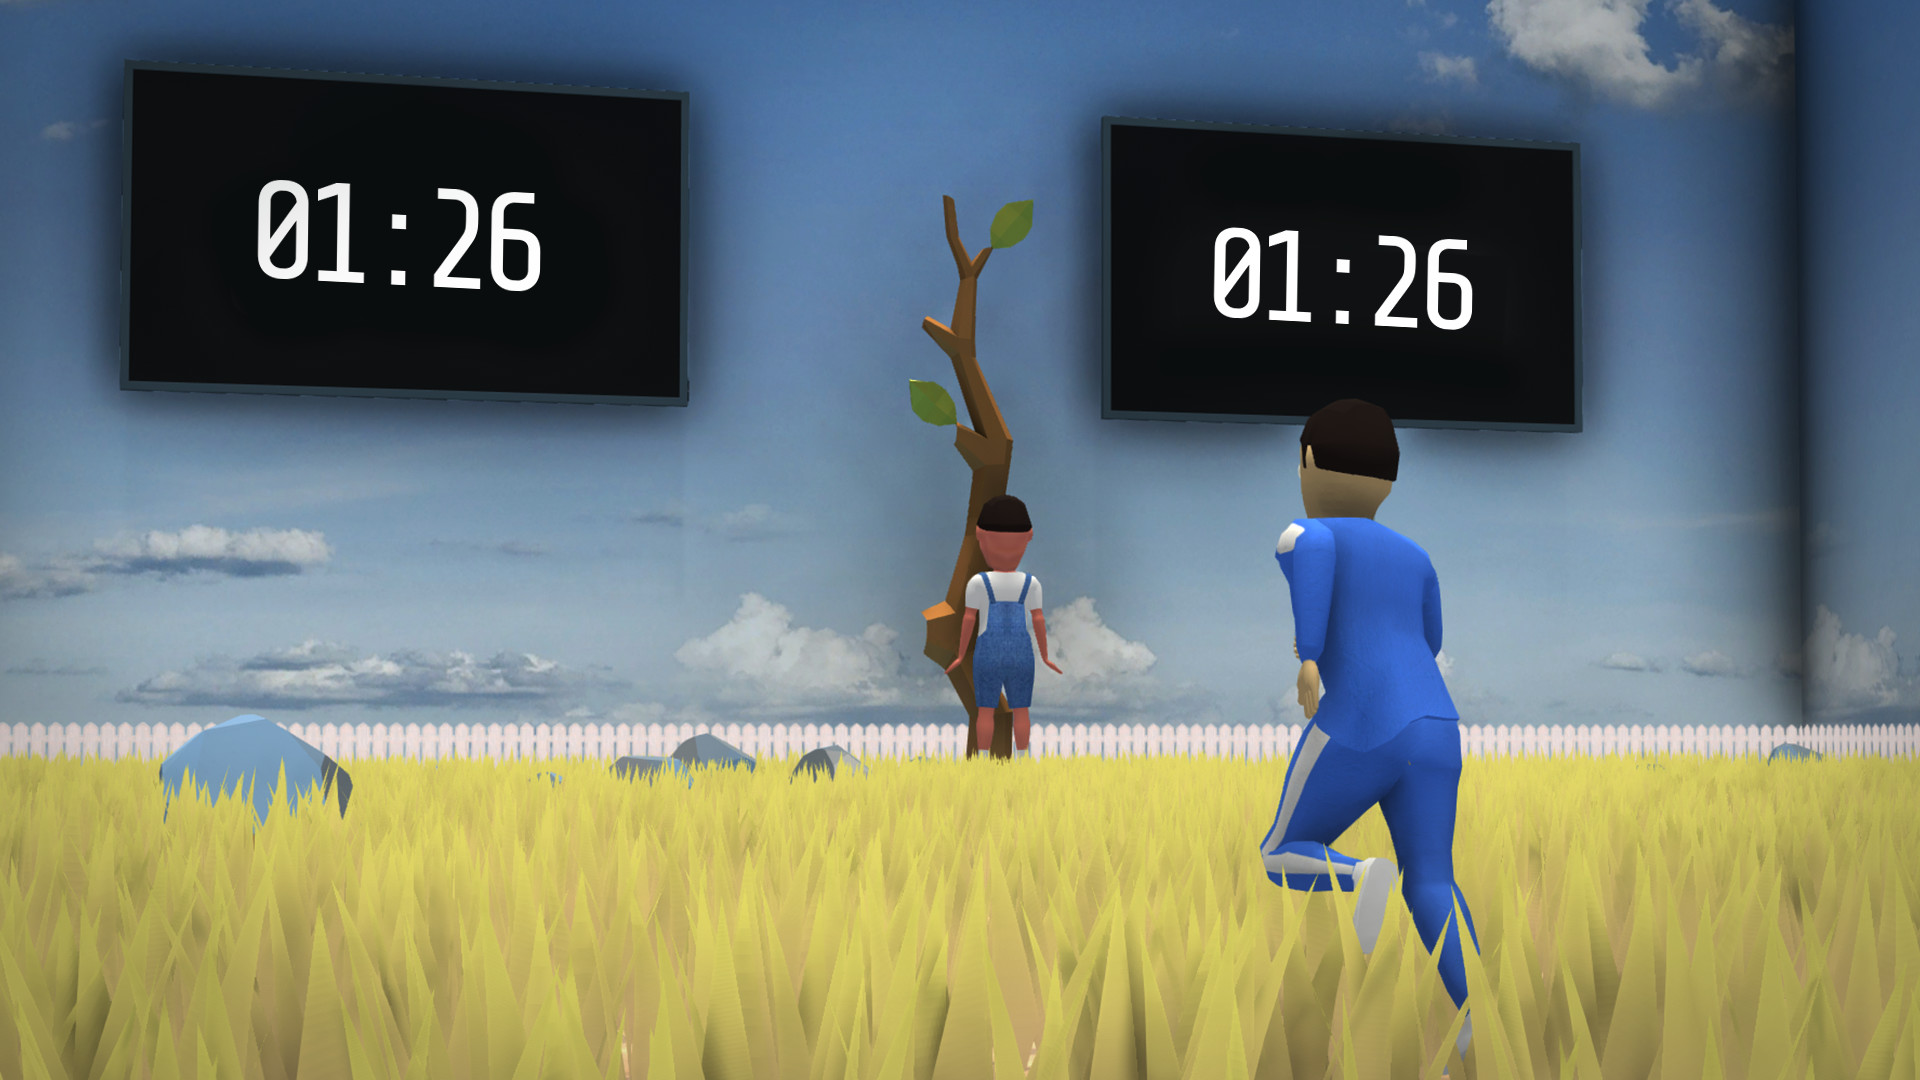 Jogos multiplayer de simulação rural na Steam - LIVE Streamer